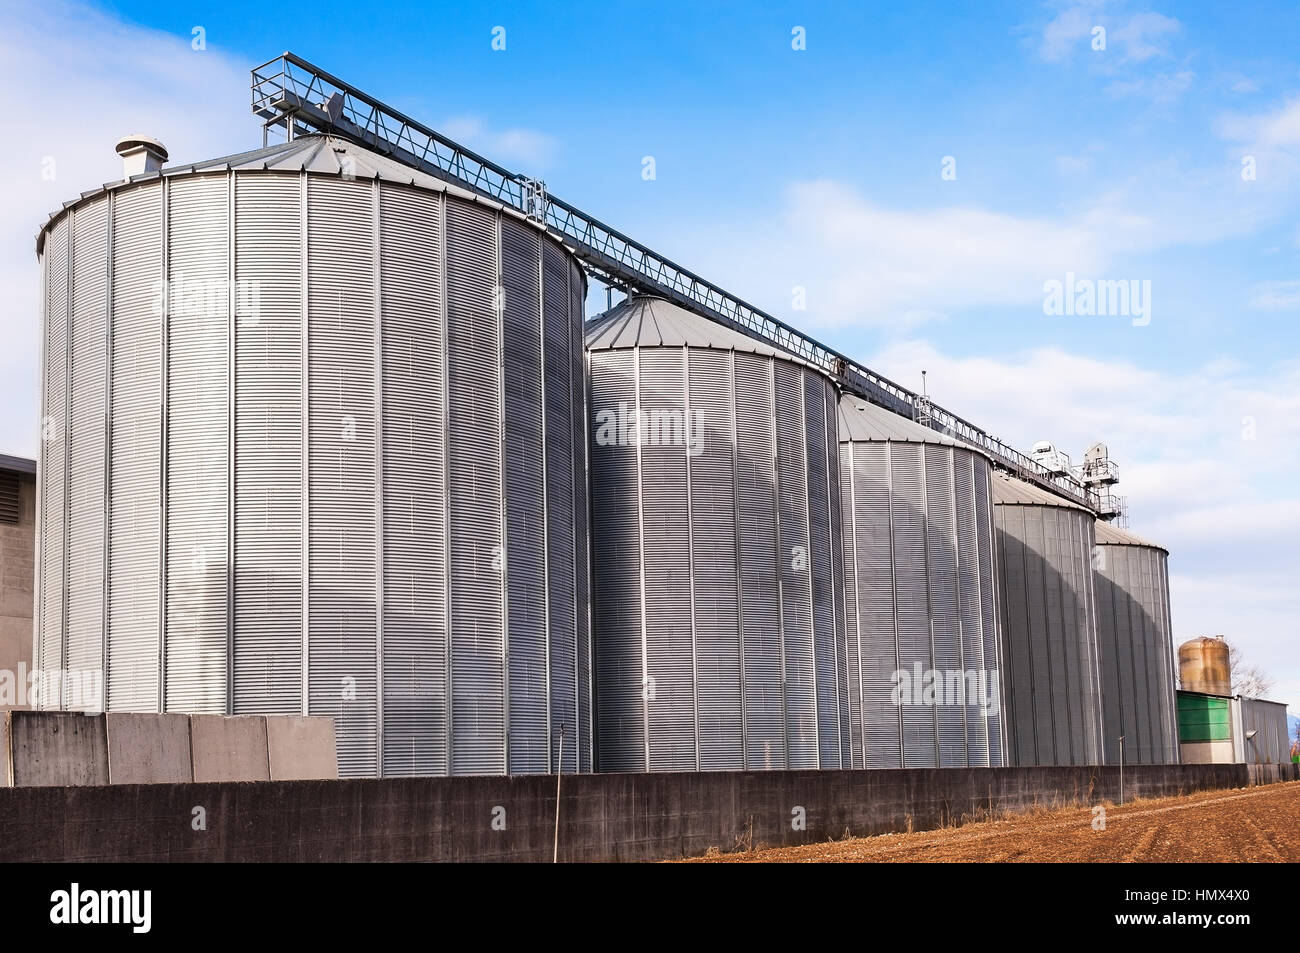 Silos agricoles. Extérieur du bâtiment. L'entreposage et le séchage de céréales, blé, maïs, soja, tournesol contre le ciel bleu avec des nuages blancs Banque D'Images